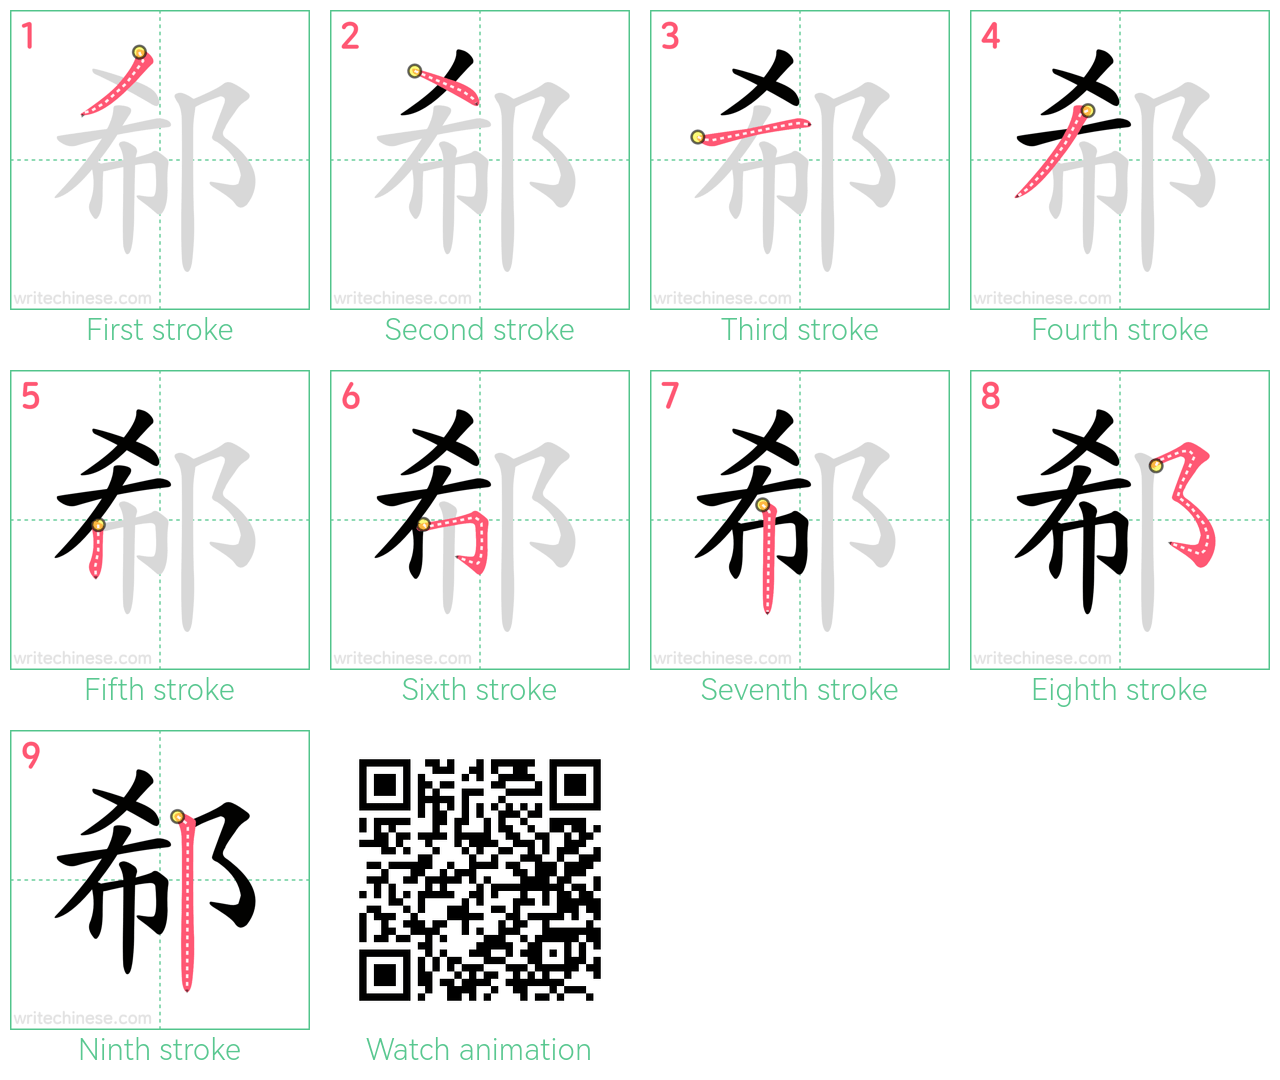 郗 step-by-step stroke order diagrams